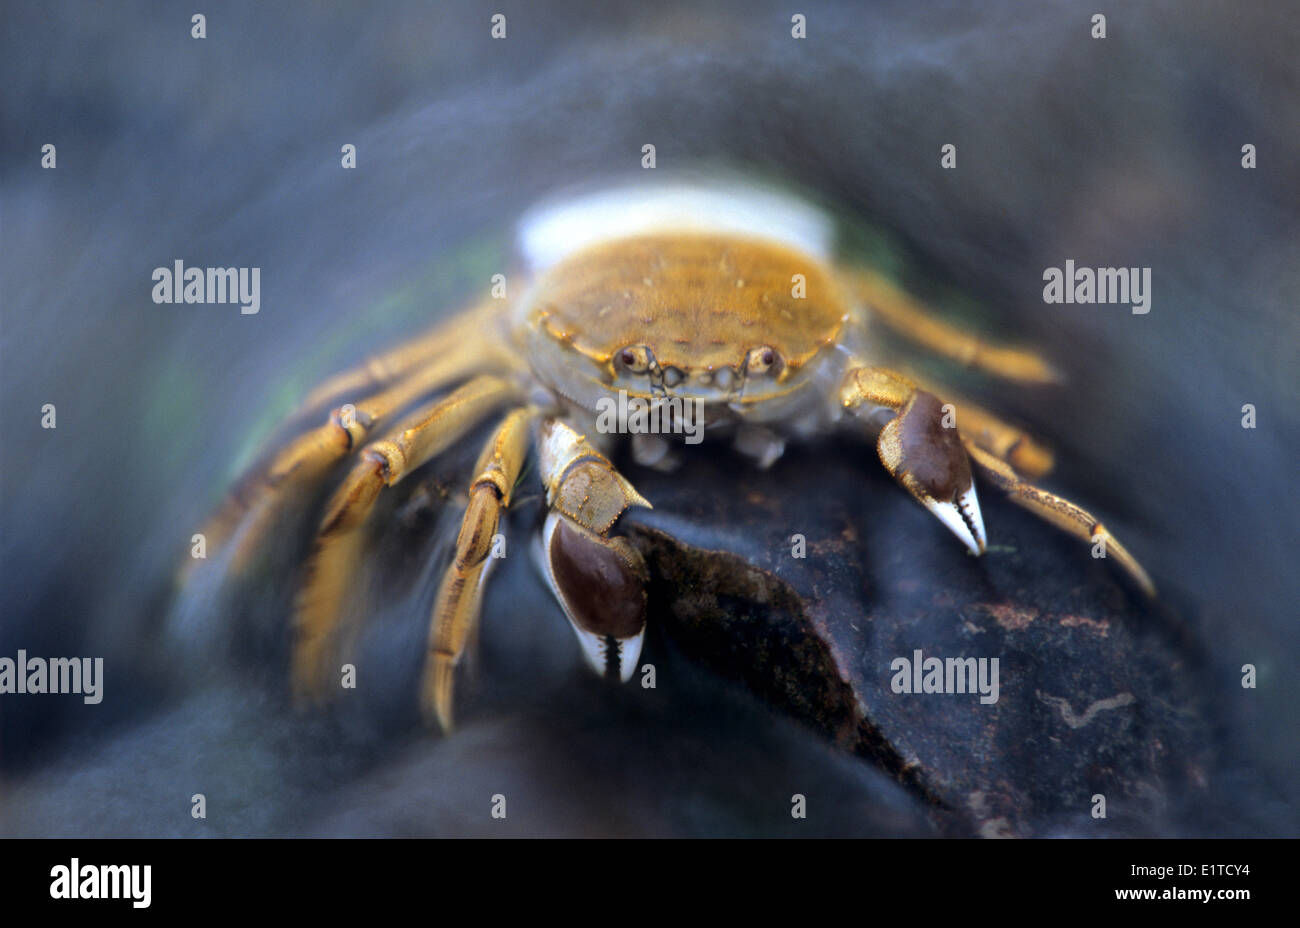 Crabe chinois sur la pierre dans l'eau Banque D'Images